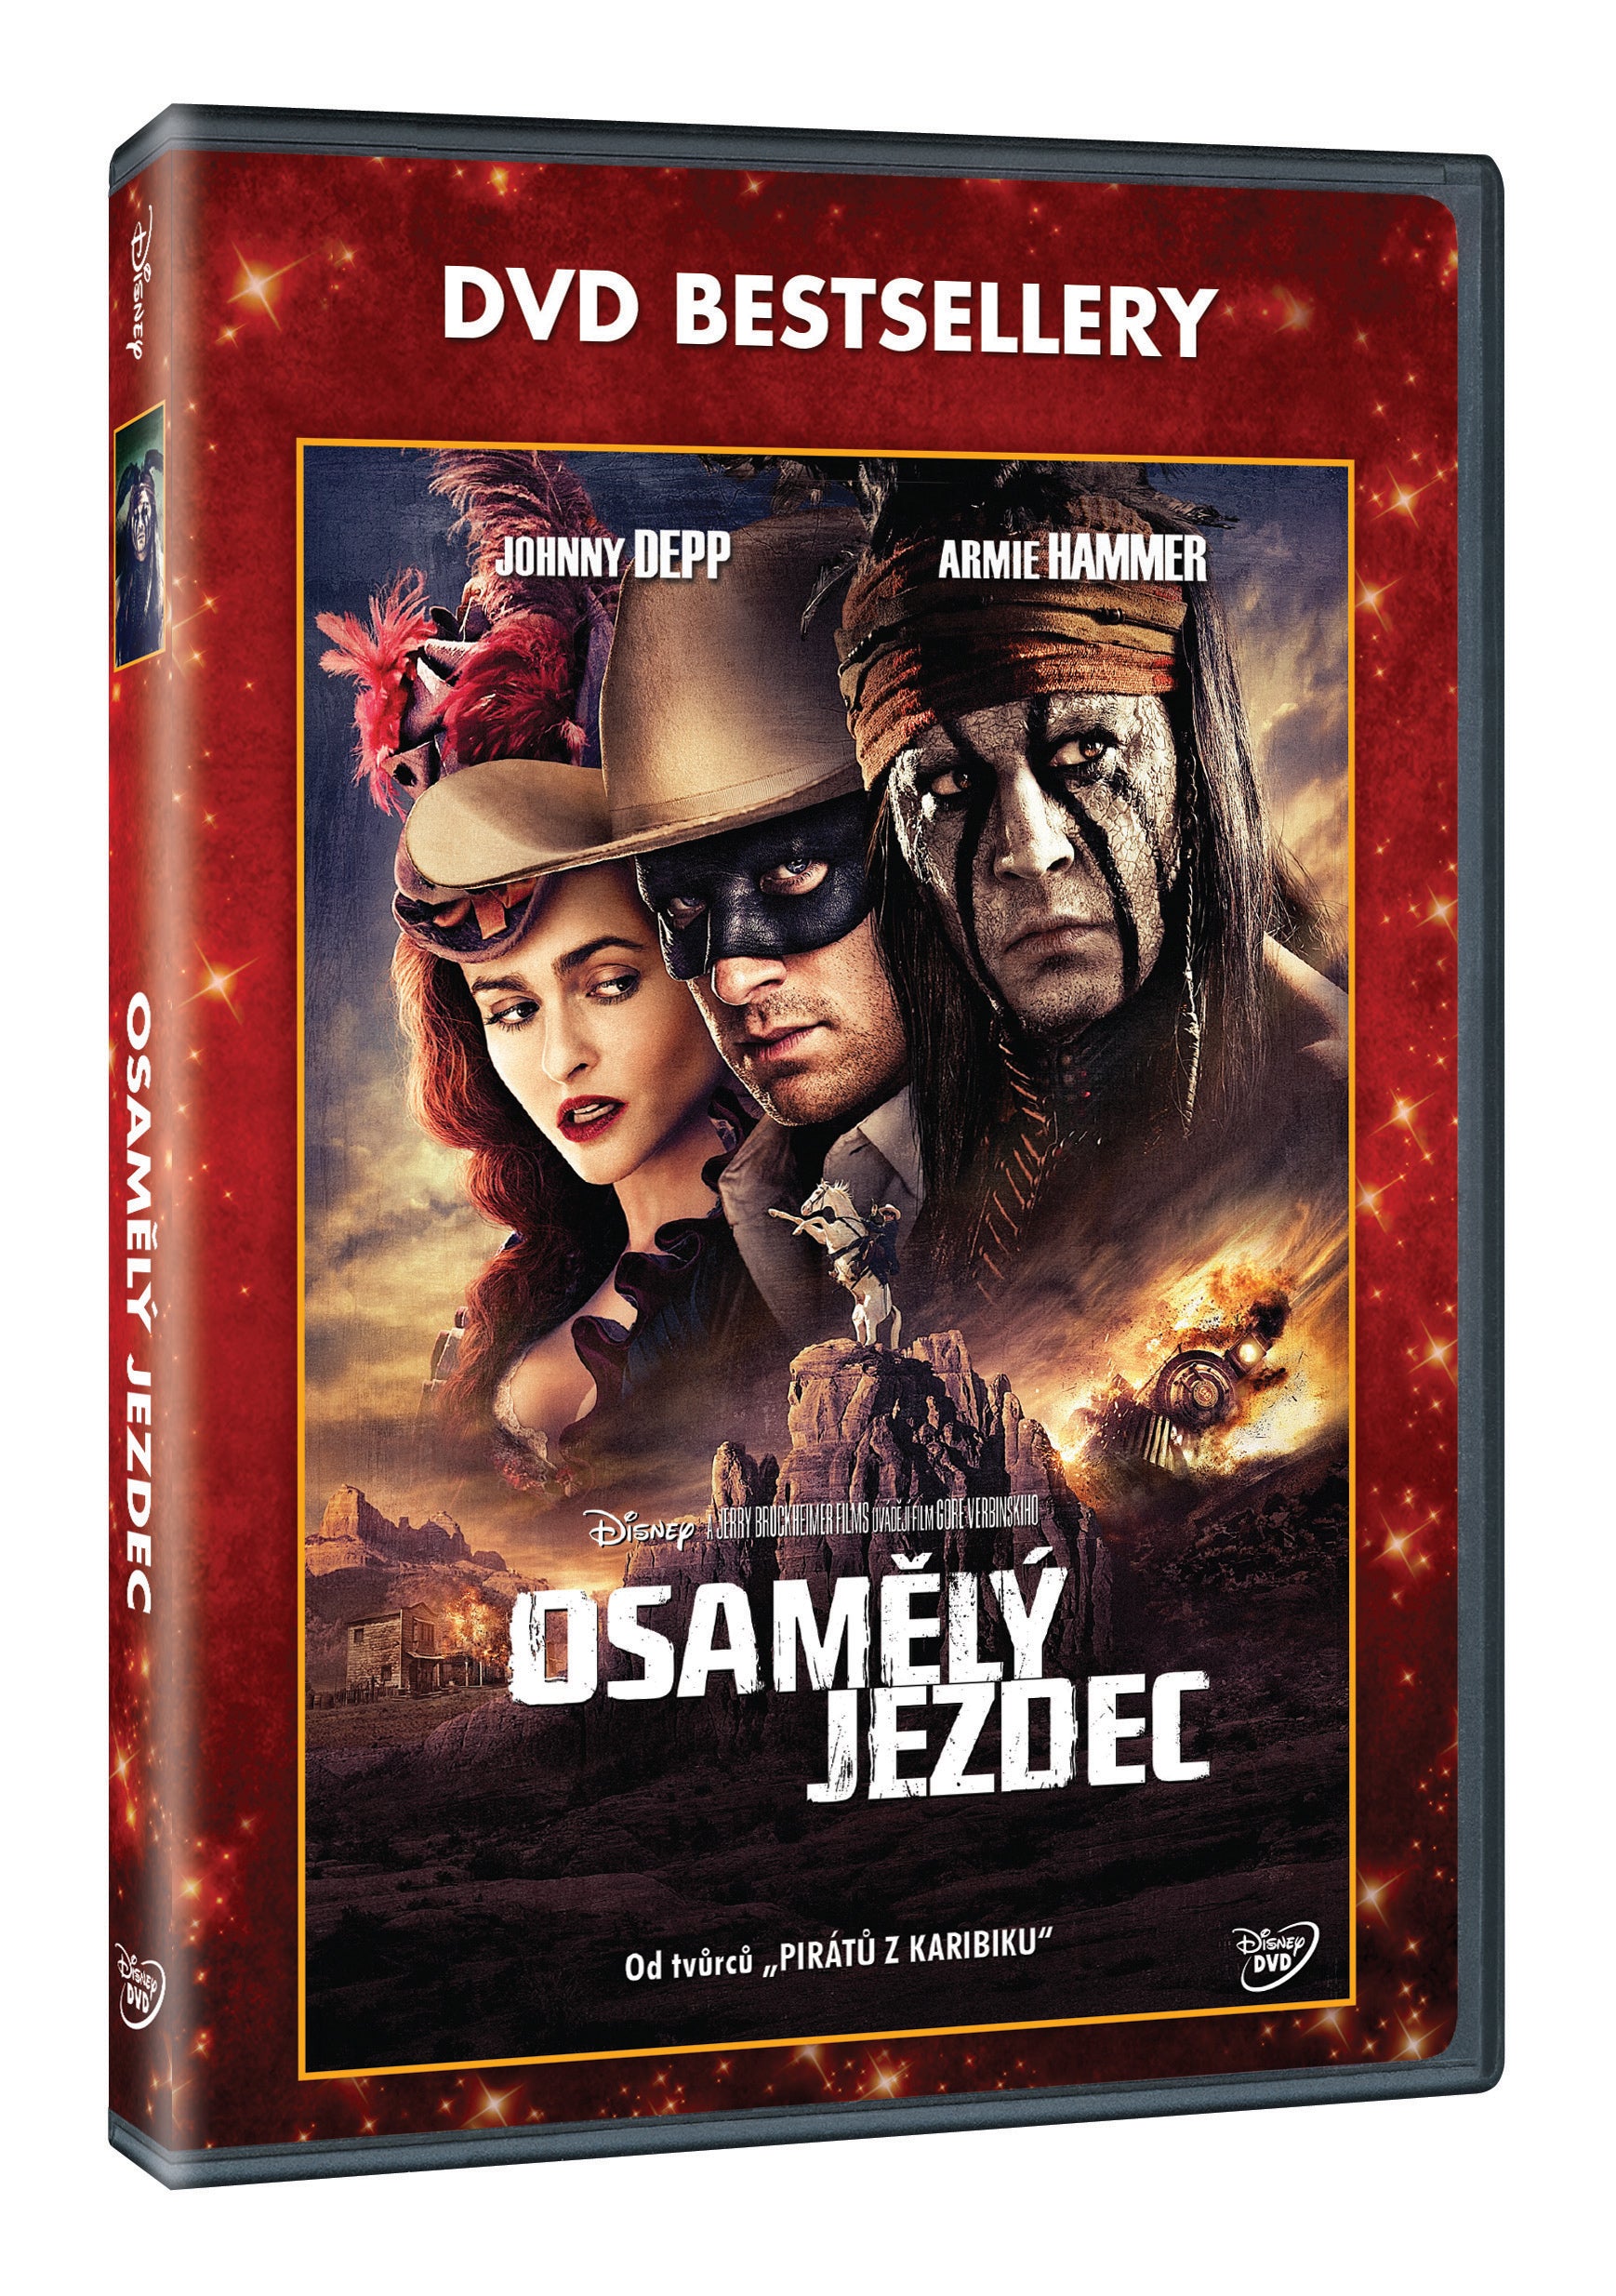 Osamely jezdec - DVD bestsellery (The Lone Ranger)